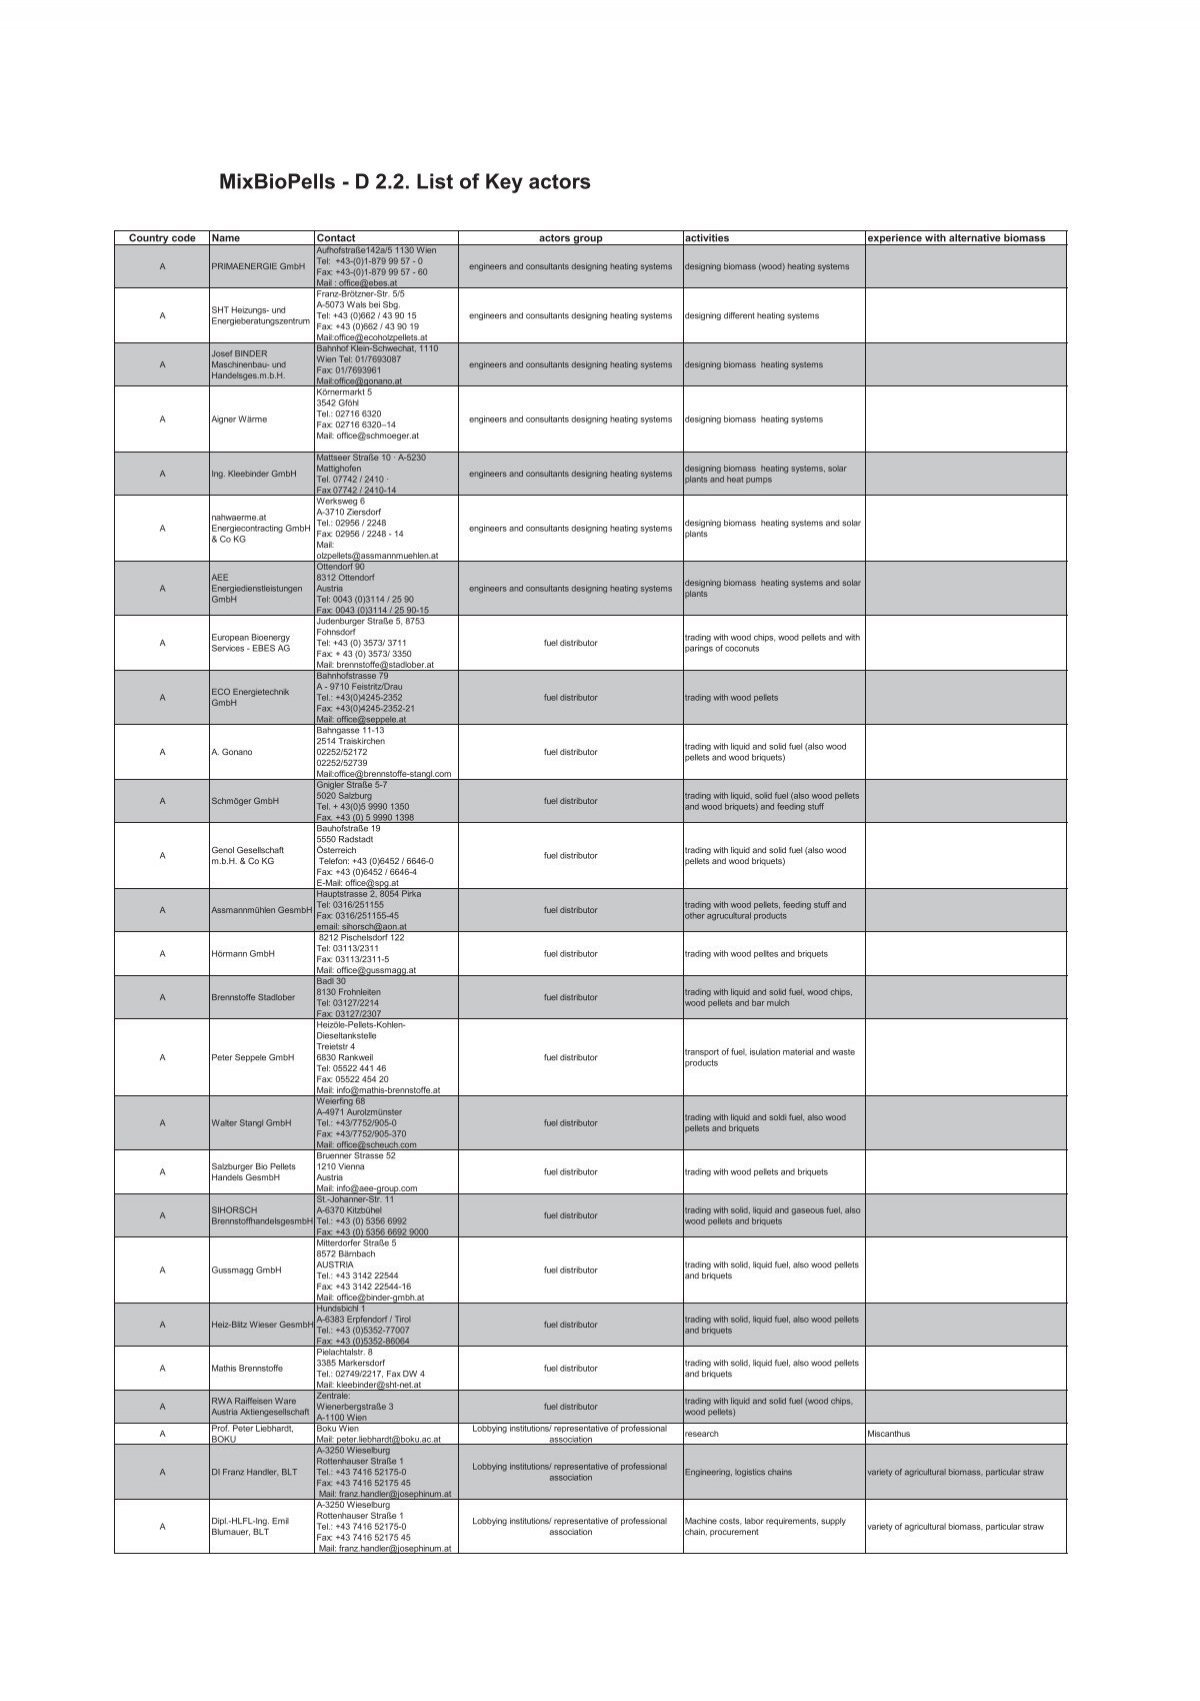 MixBioPells - D List of Key